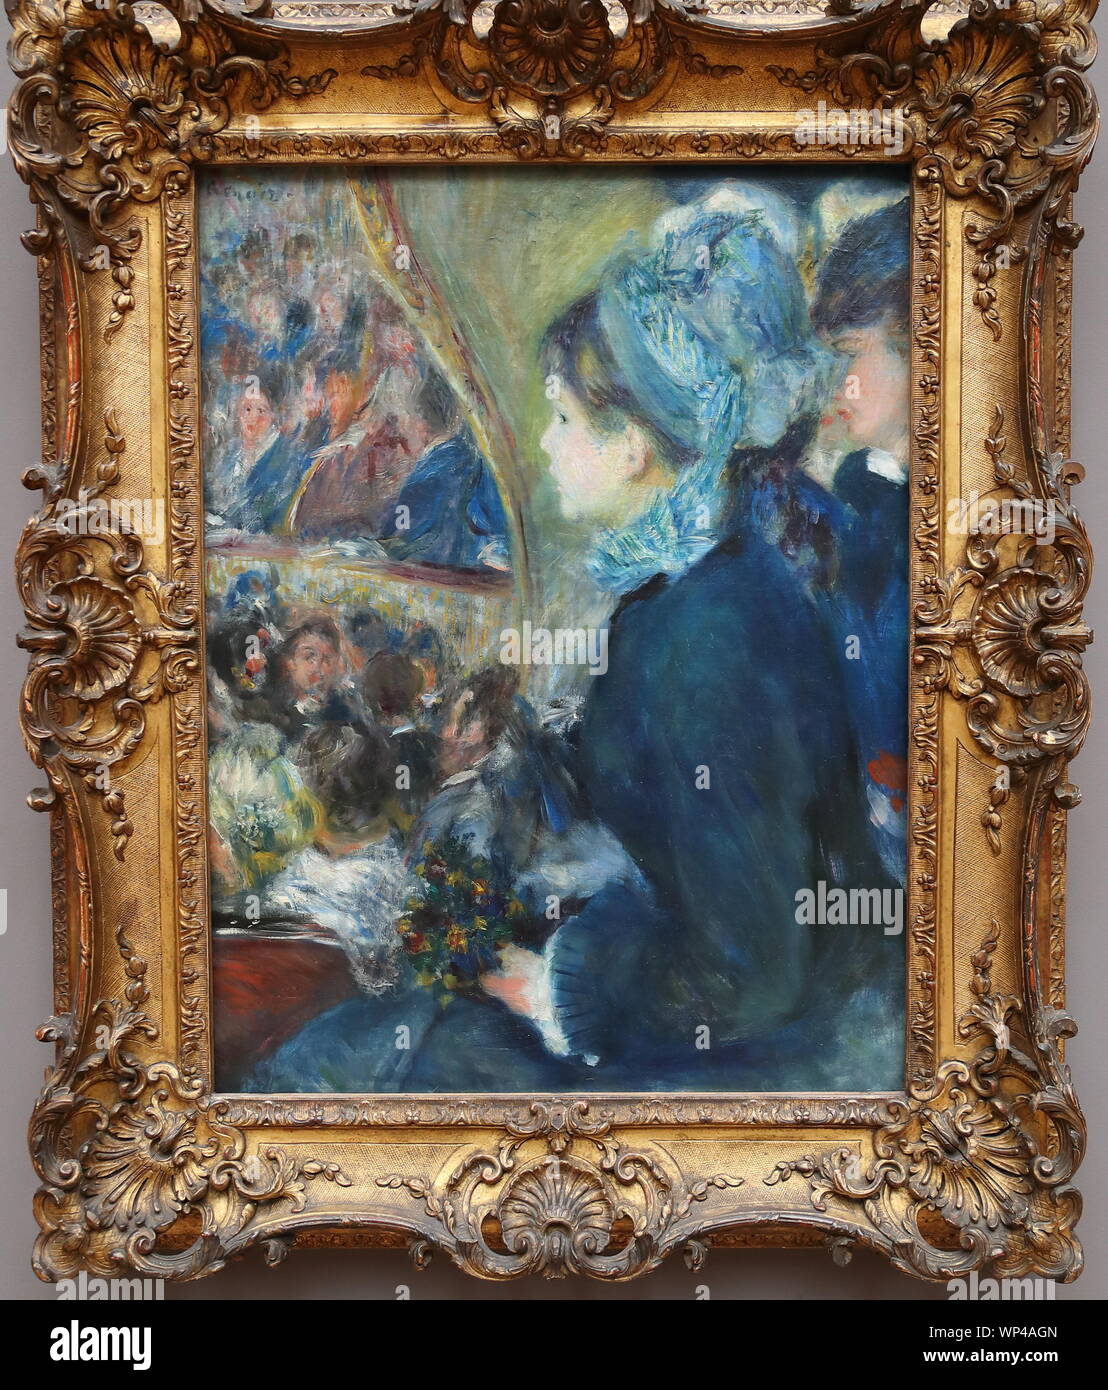 Presso il Teatro (La premiere sortie) dal francese pittore impressionista  Pierre-Auguste Renoir presso la National Gallery di Londra, Regno Unito  Foto stock - Alamy